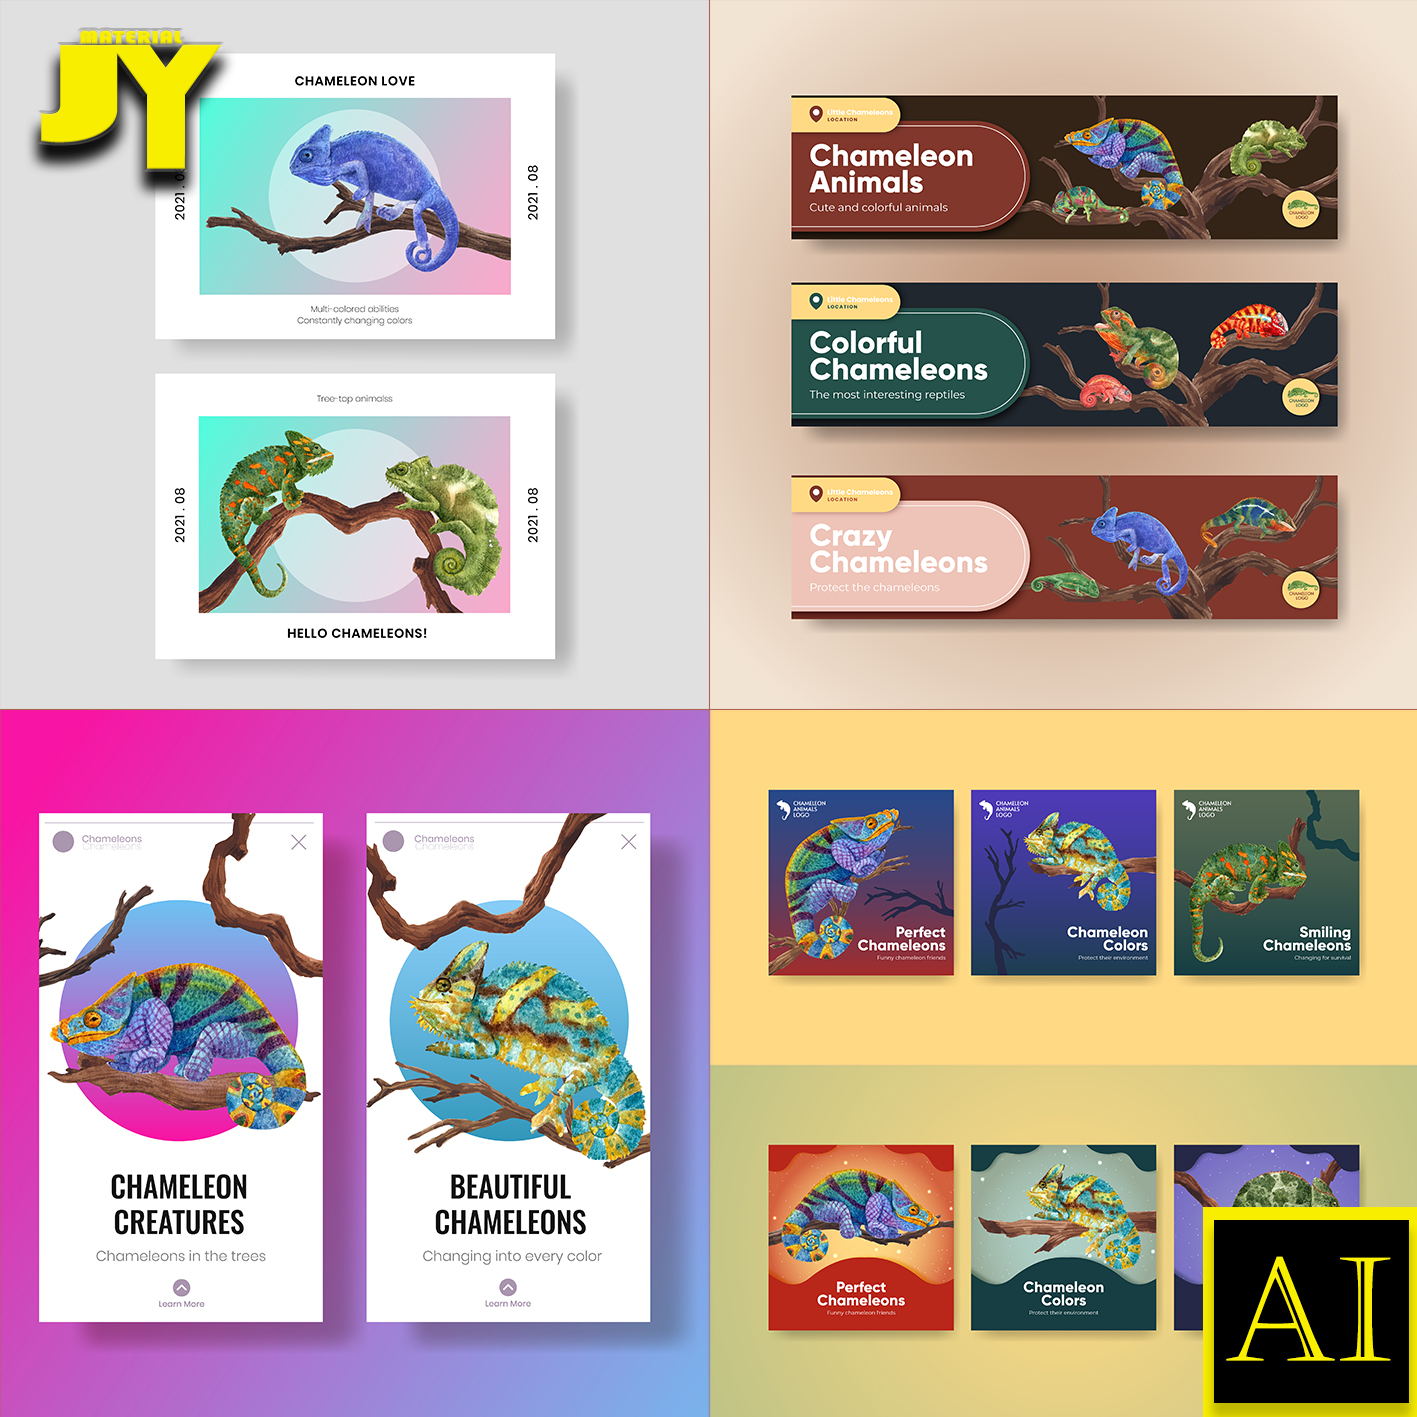 矢量手绘变色龙蜥蜴野生动物简介明信片贺卡模板海报插画设计素材